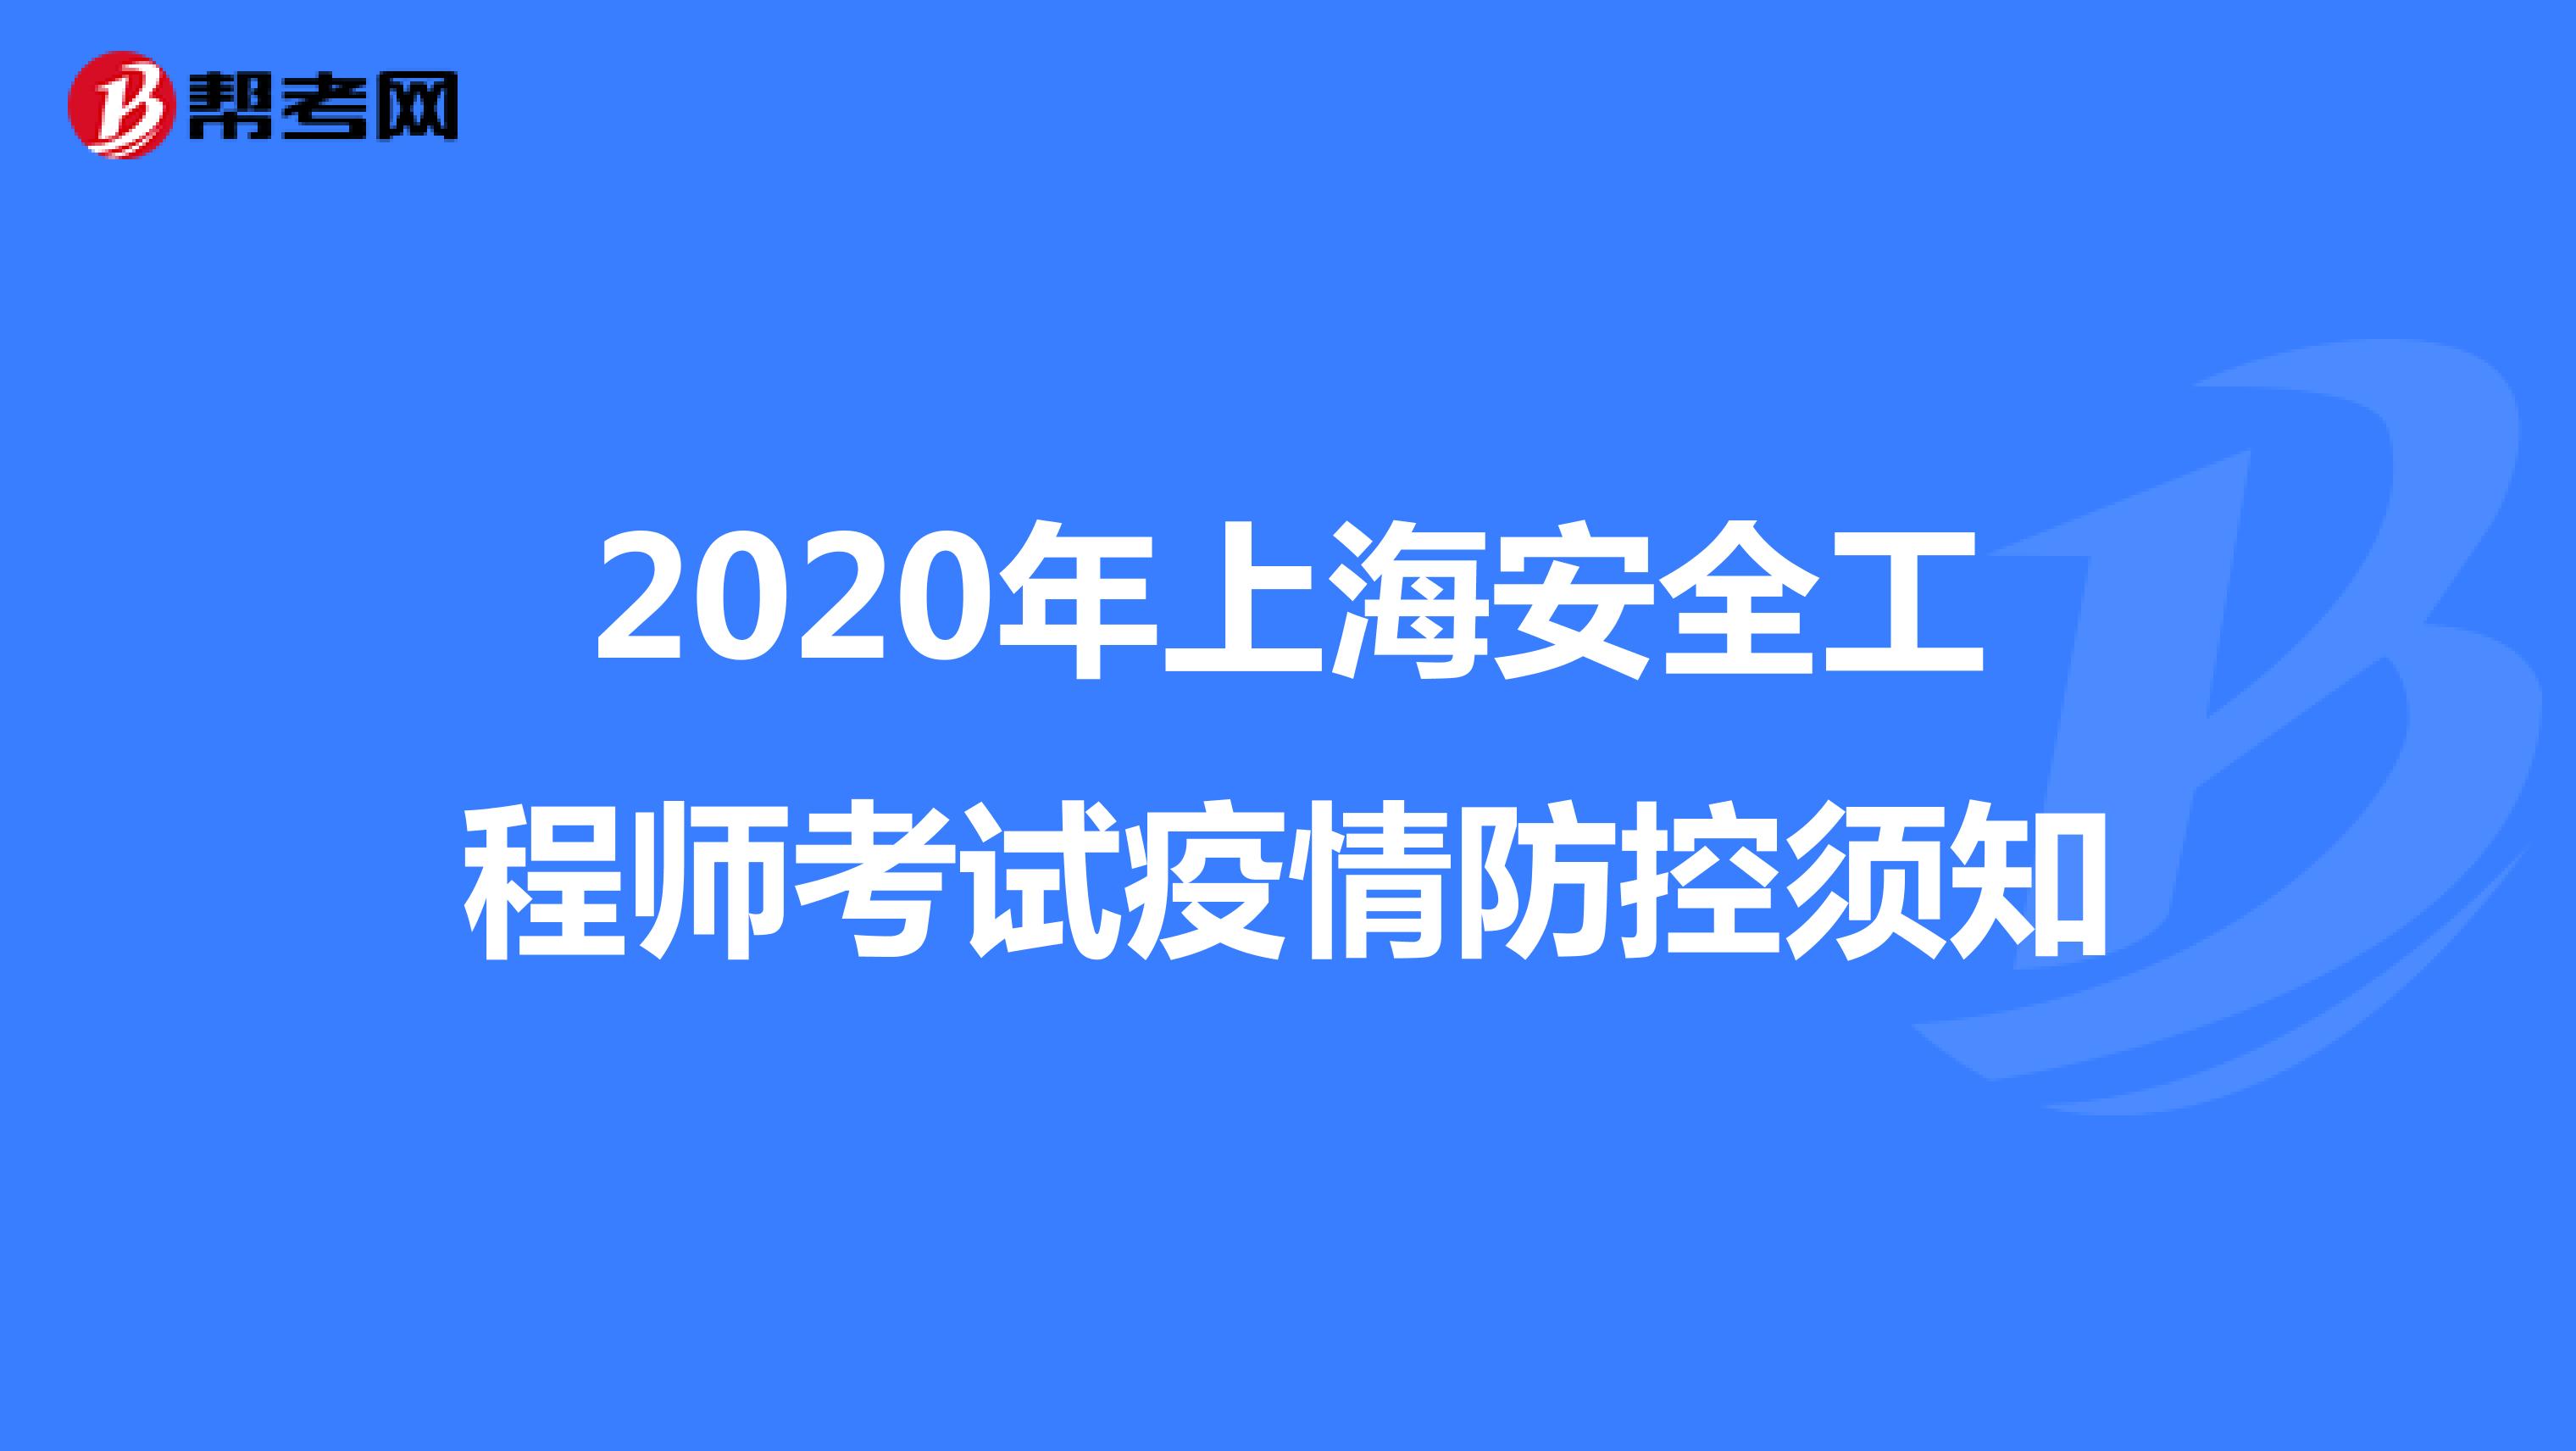 2020年上海安全工程师考试疫情防控须知